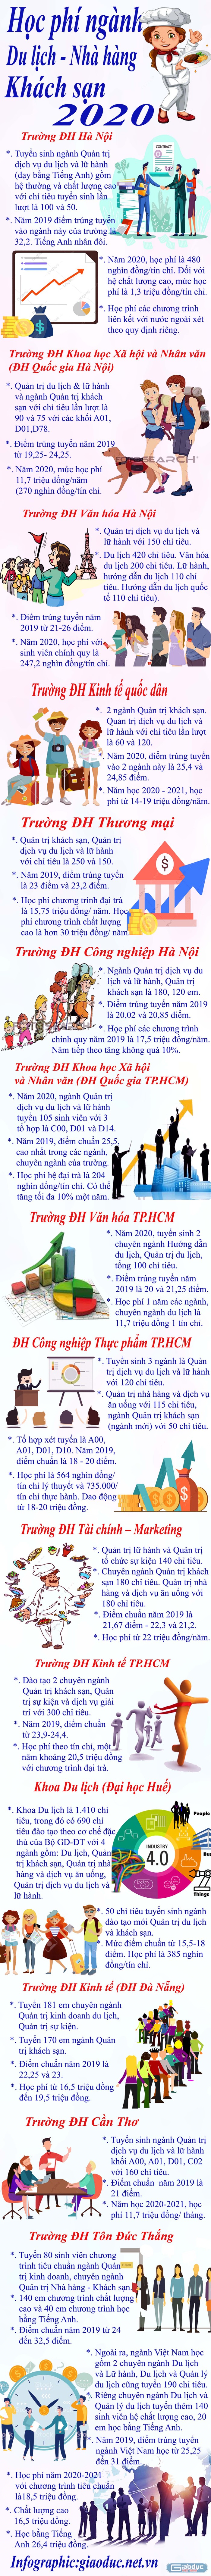 Infographic: Tùng Dương.